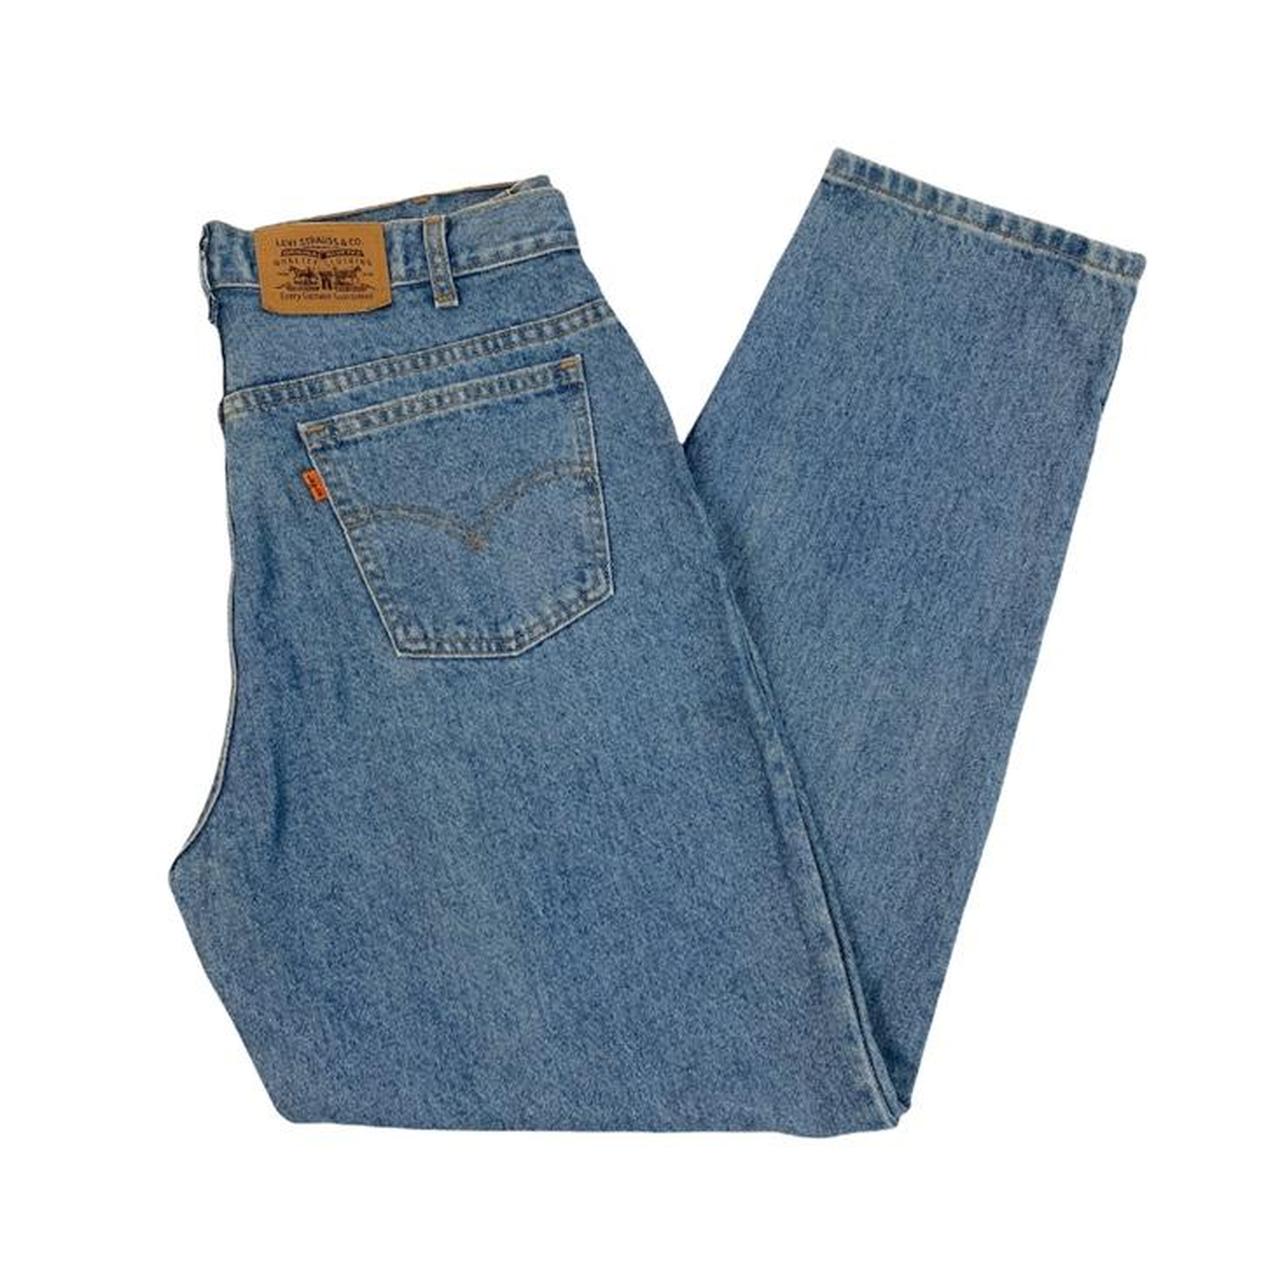 Vintage Levi’s orange tab Jeans in a light blue... - Depop